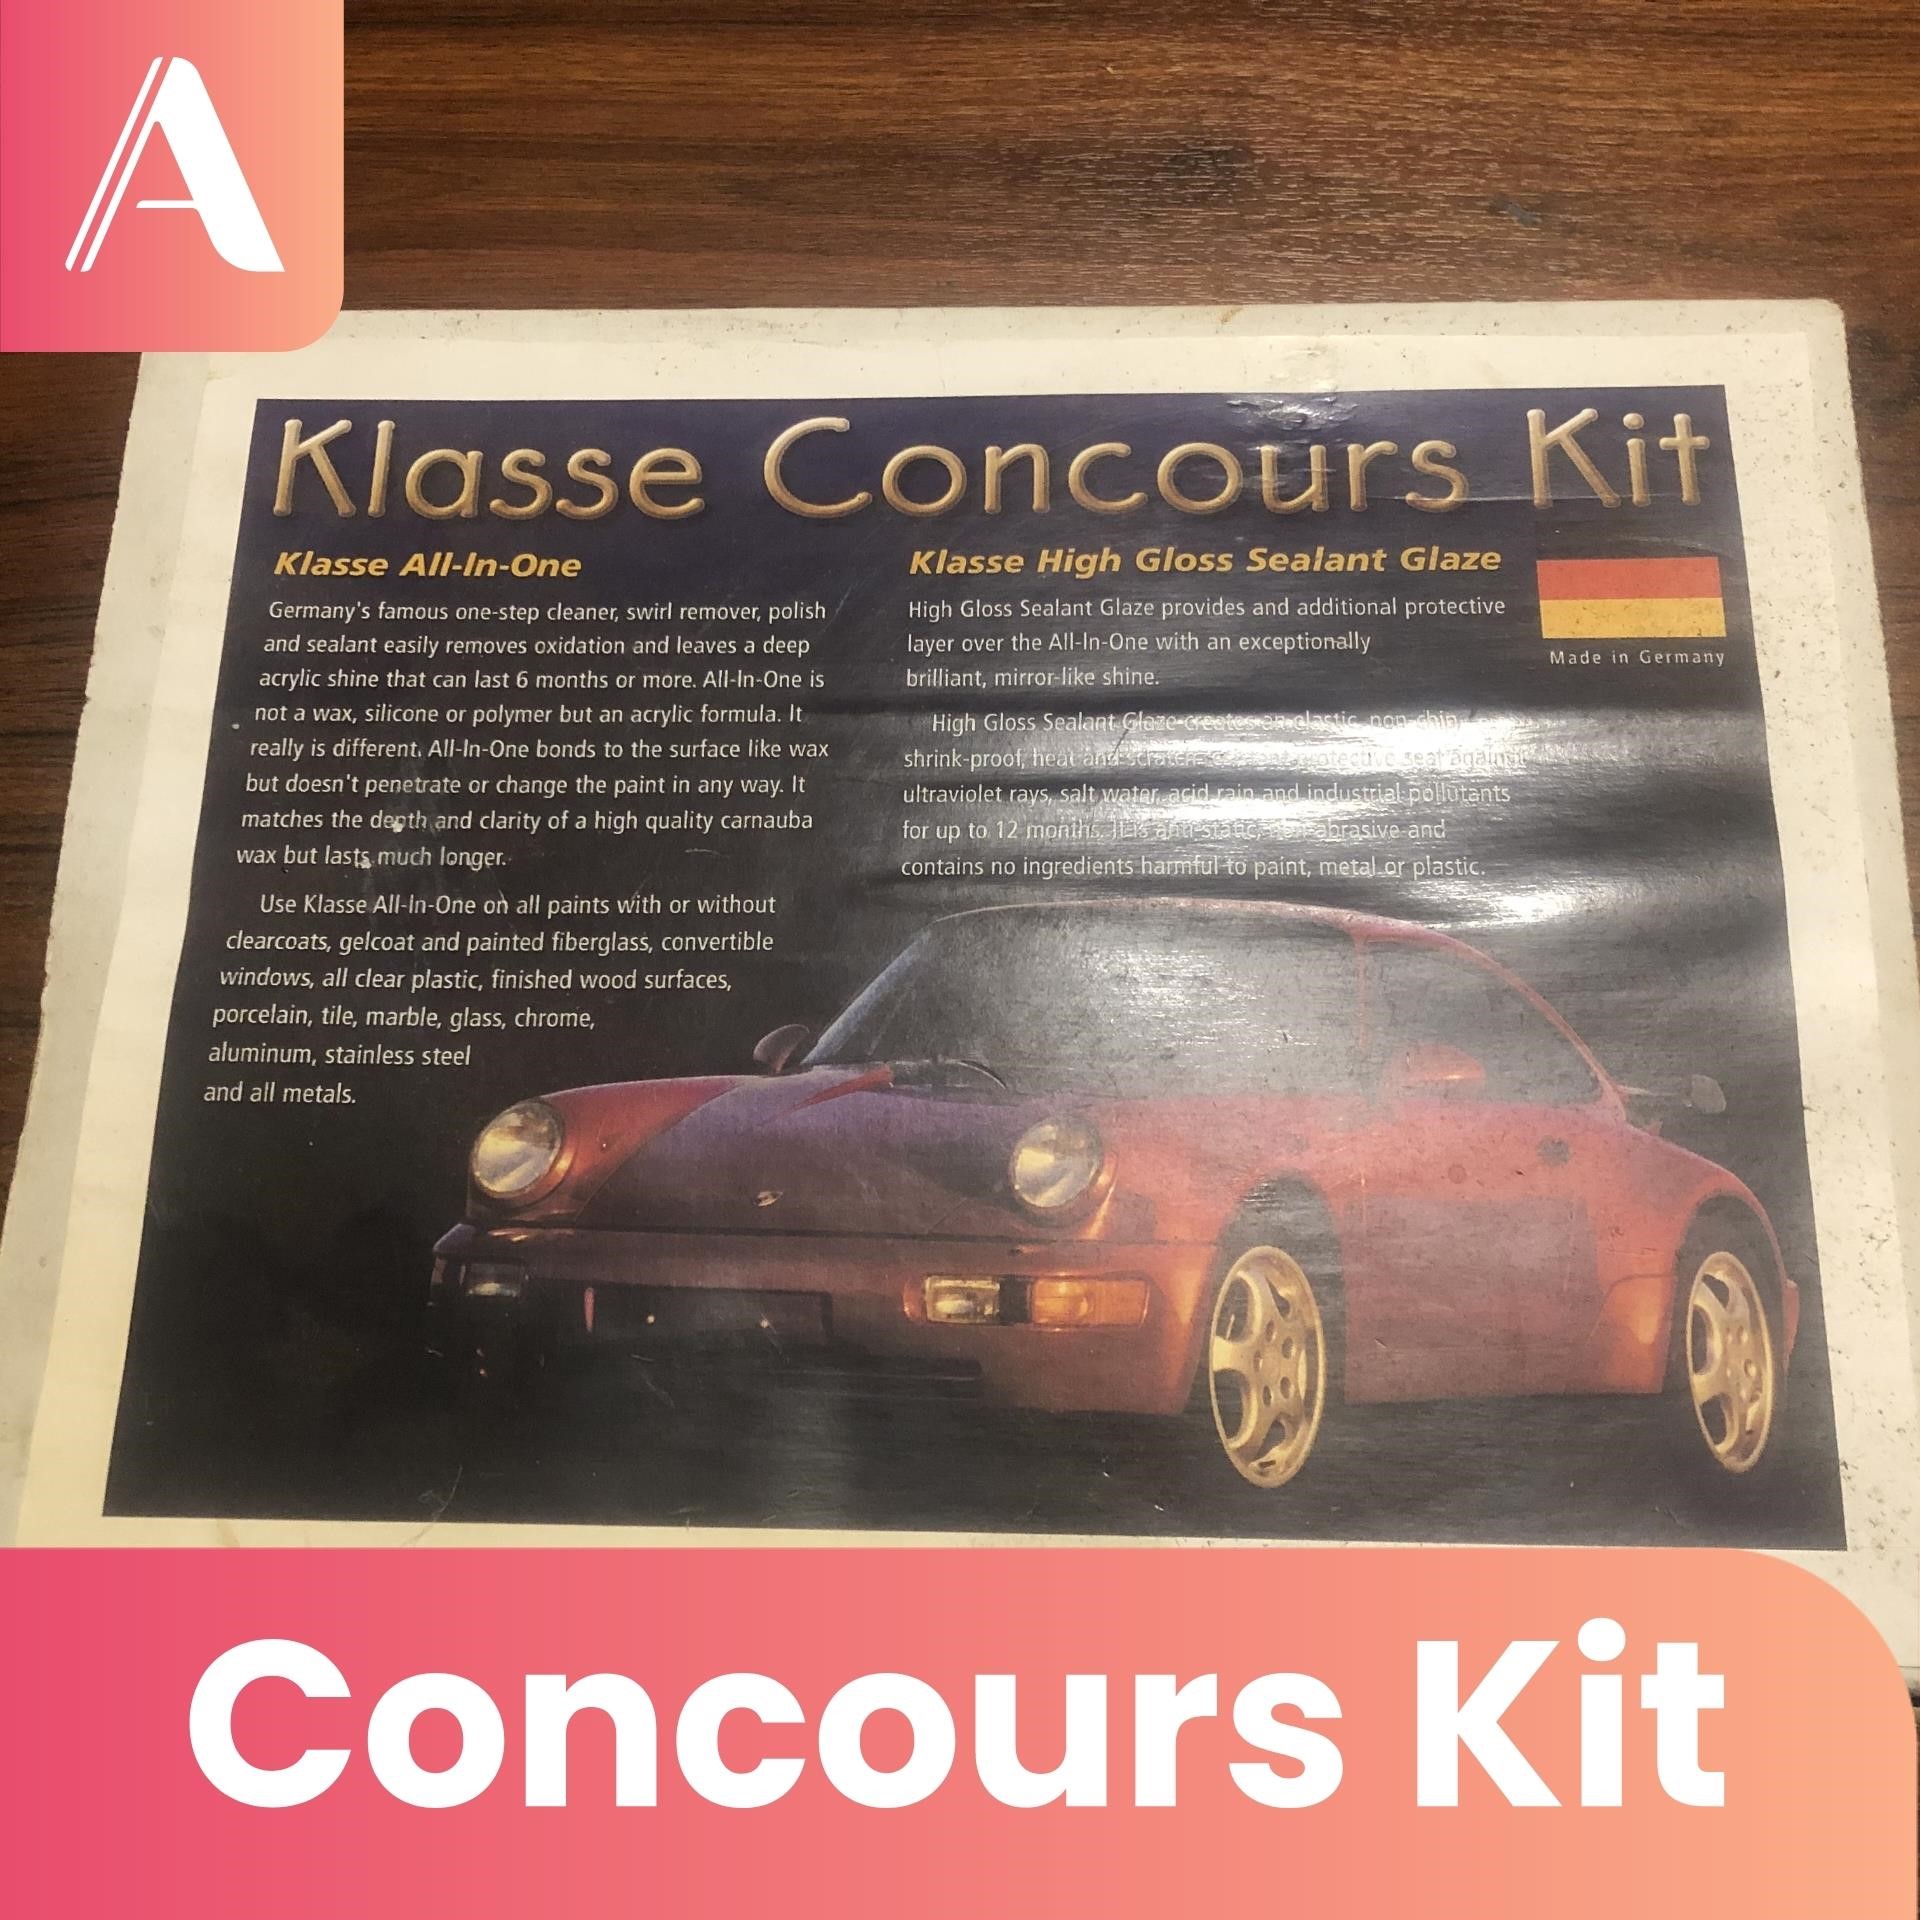 Klasse Concours Kit